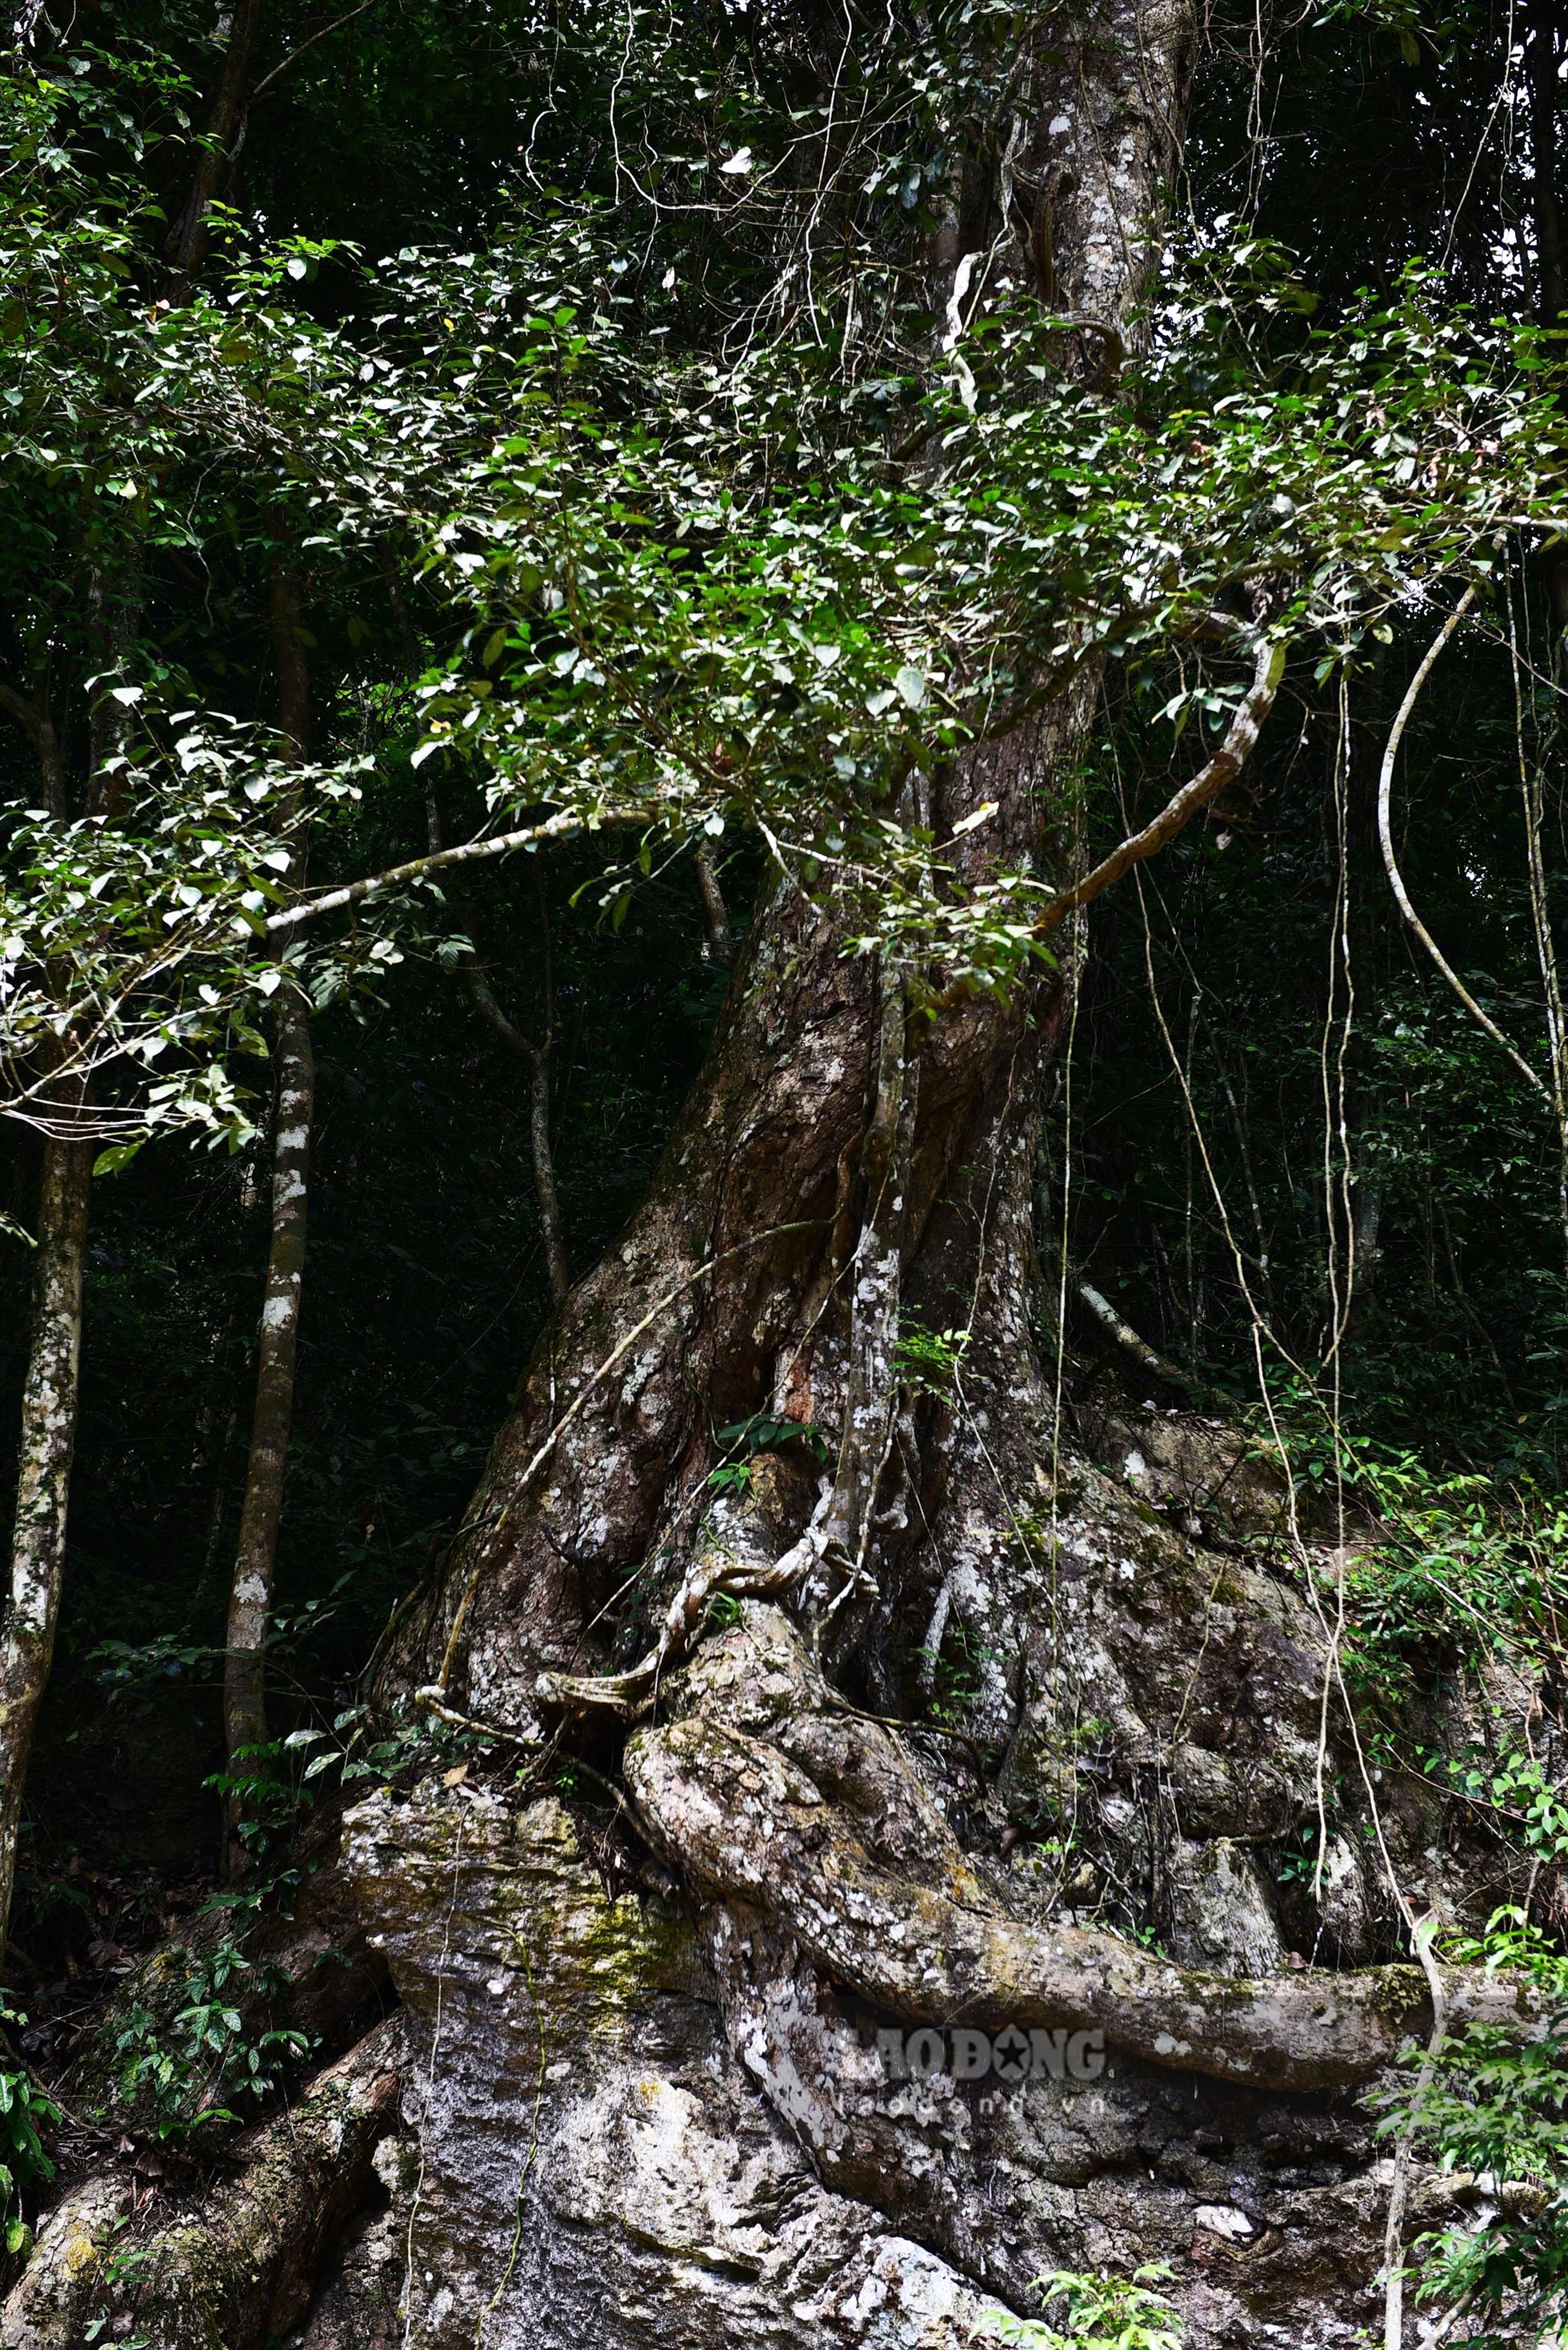 Do đặc thù của loài cây này chỉ sống trên tầng núi đá vôi nên đã tạo cho chúng những bộ rễ khủng bám chặt vào vách đá. Cây nghiến non bằng bắp đùi đã có mấy chục năm tuổi, vậy những cây đường kính 2 - 3 m, cao đến 30 - 35 m thì chắc chắn phải trên nghìn tuổi. Hiện chưa ai xác định chính xác tuổi của cây nghiến sống thọ được bao nhiêu năm.